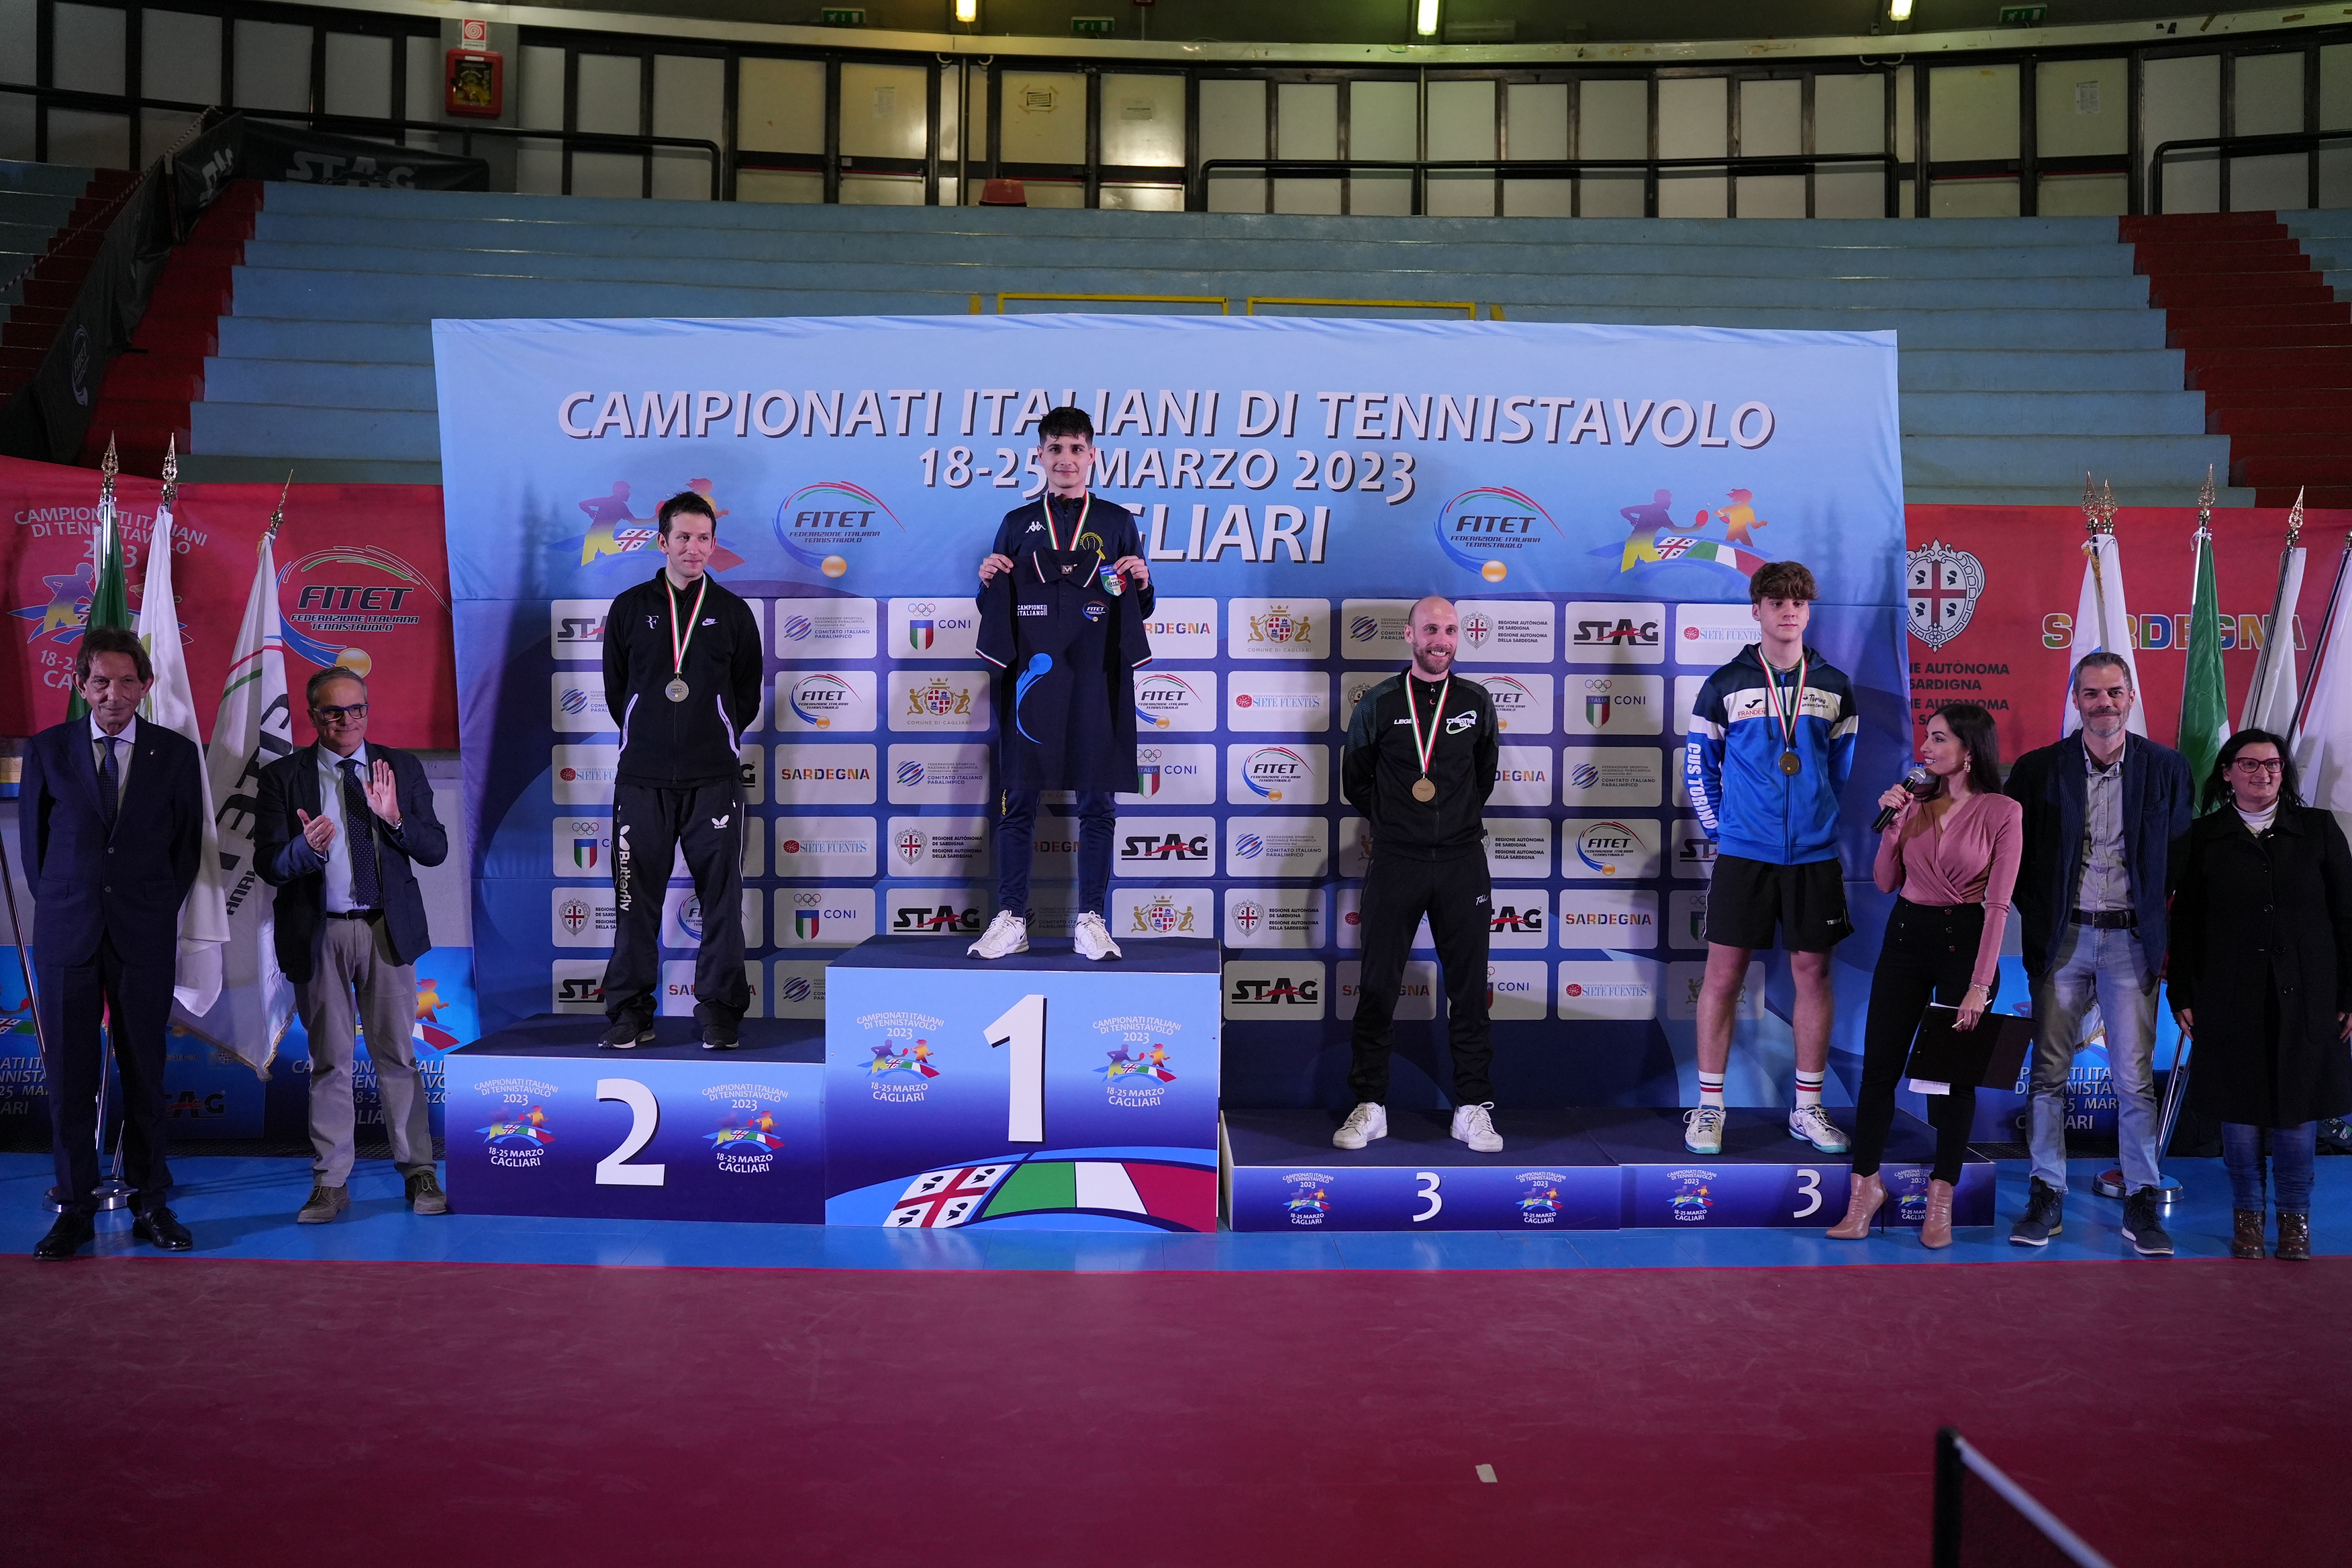 Campionati Italiani di Cagliari 2023 podio del singolare maschile di seconda categoria